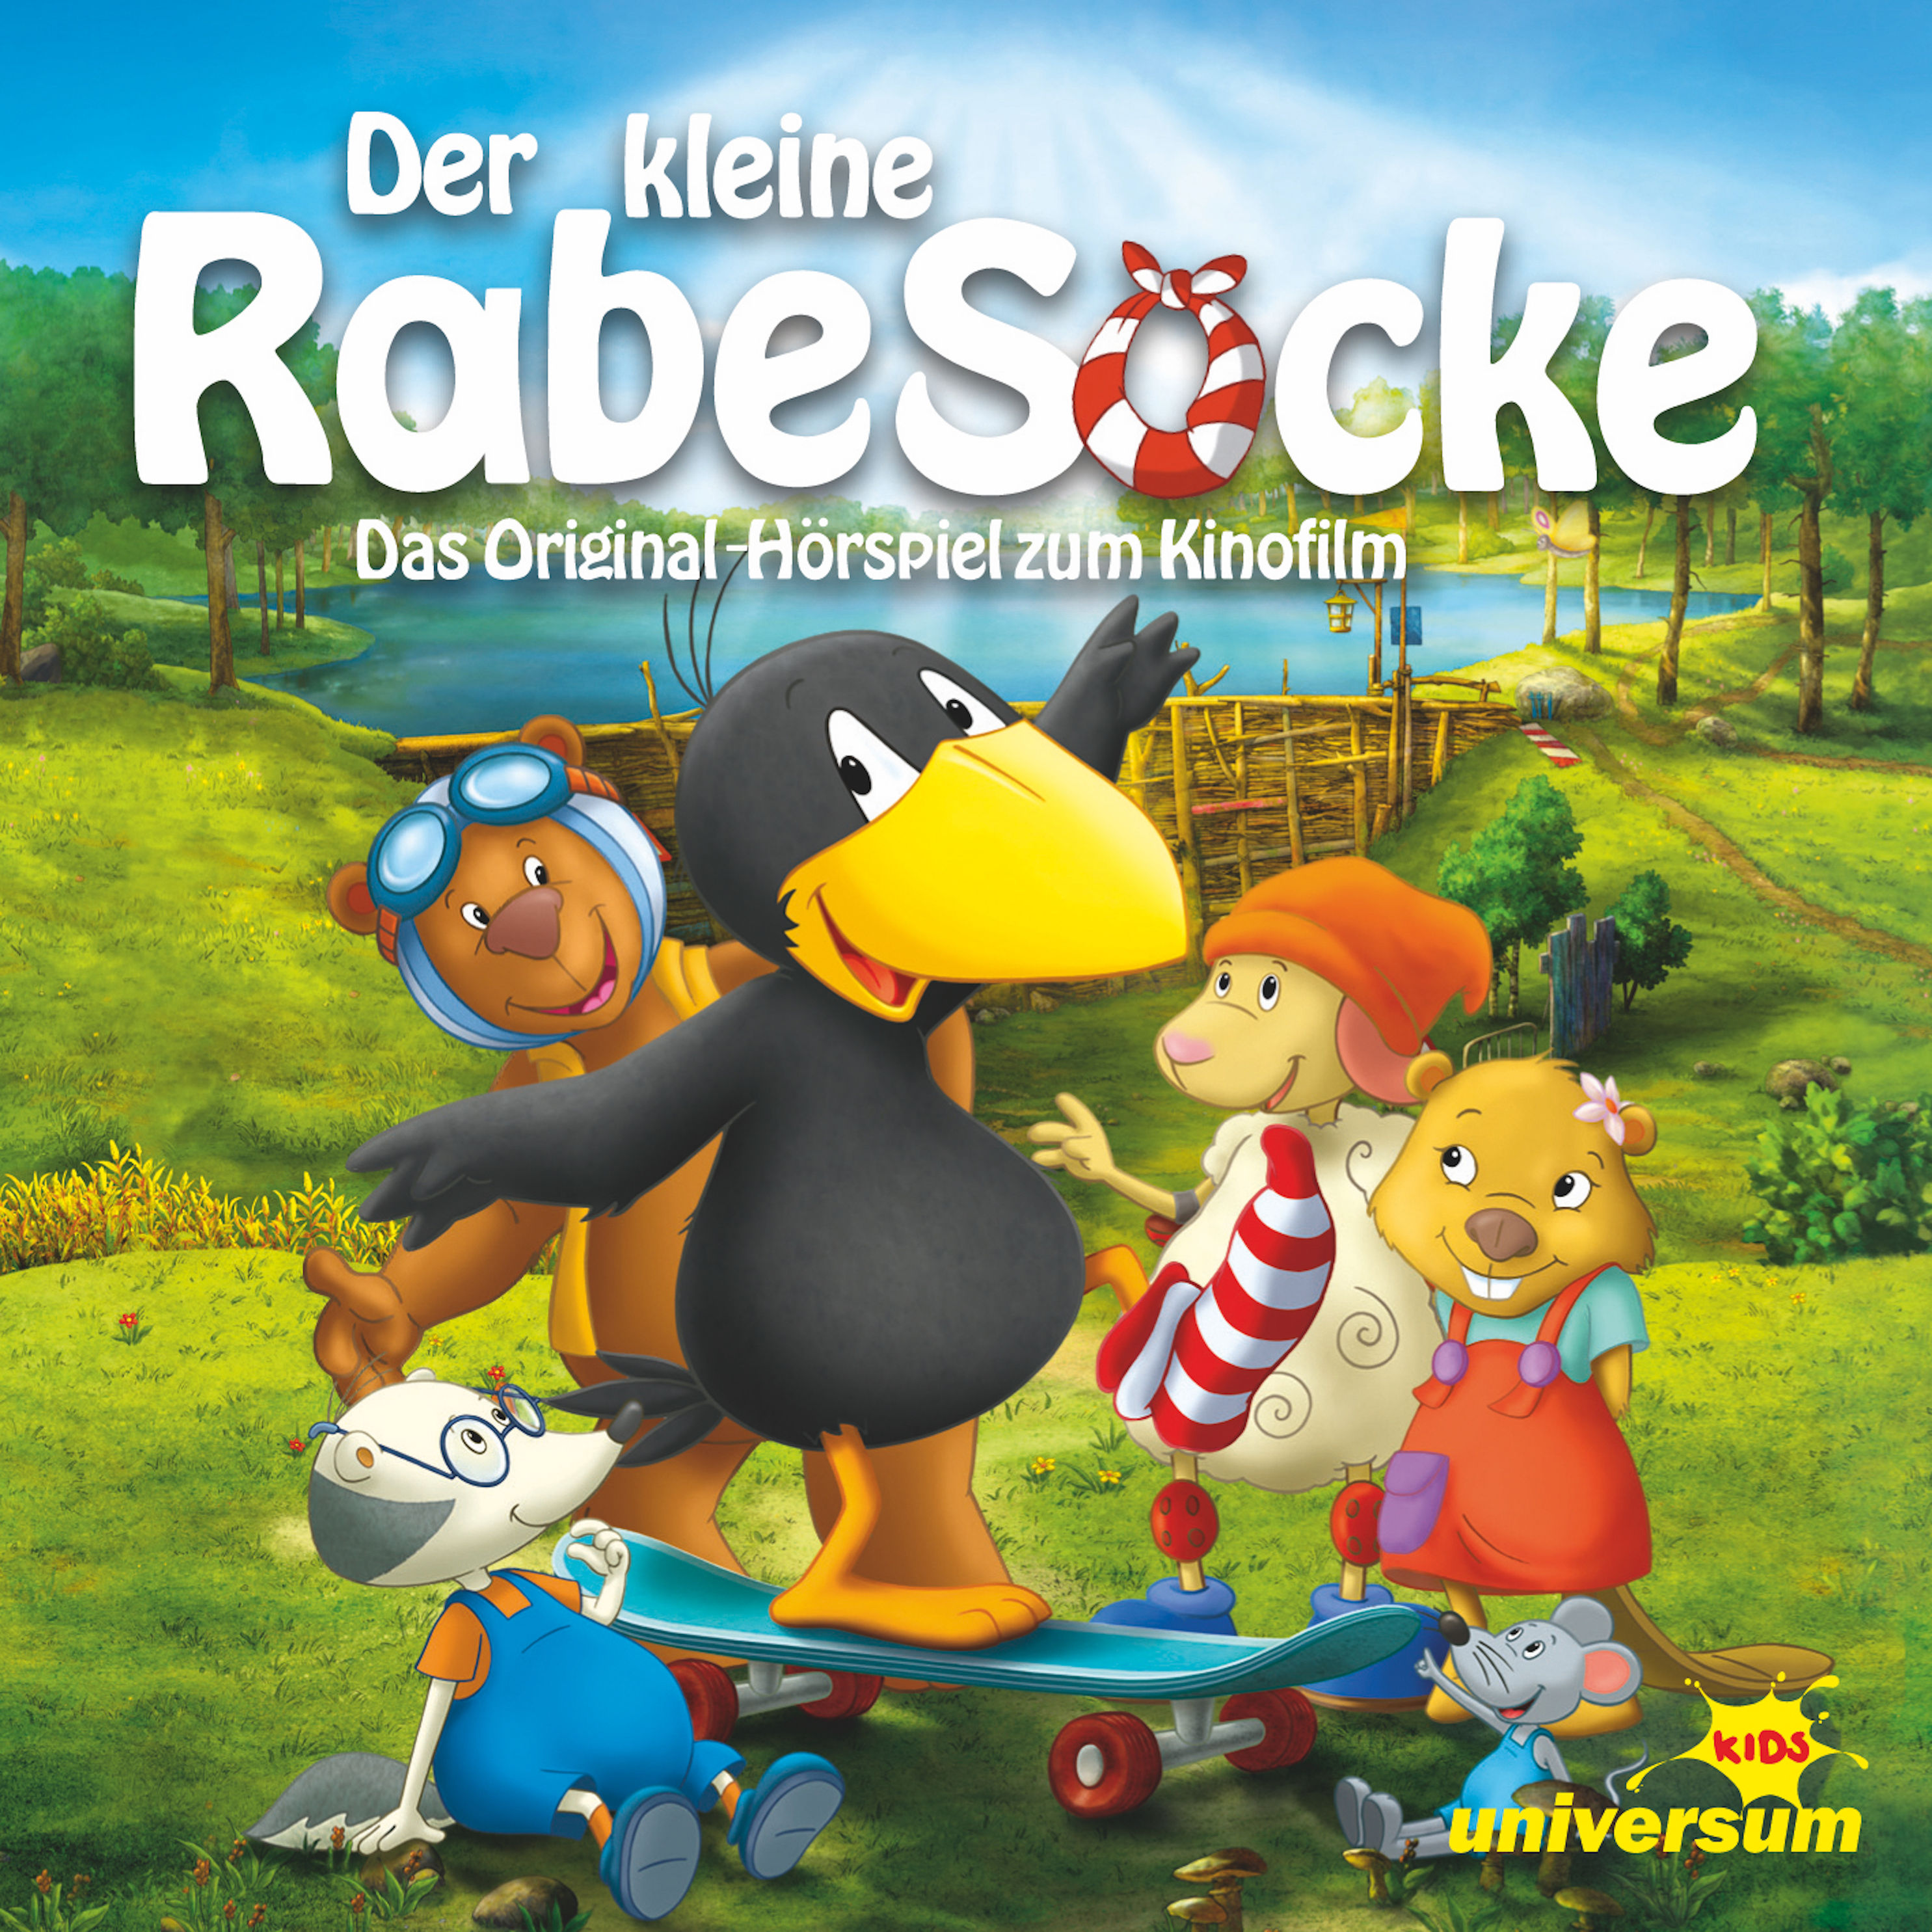 Der kleine Rabe Socke - Der kleine Rabe Socke - Hörspiel zum Film Hörbuch  Download